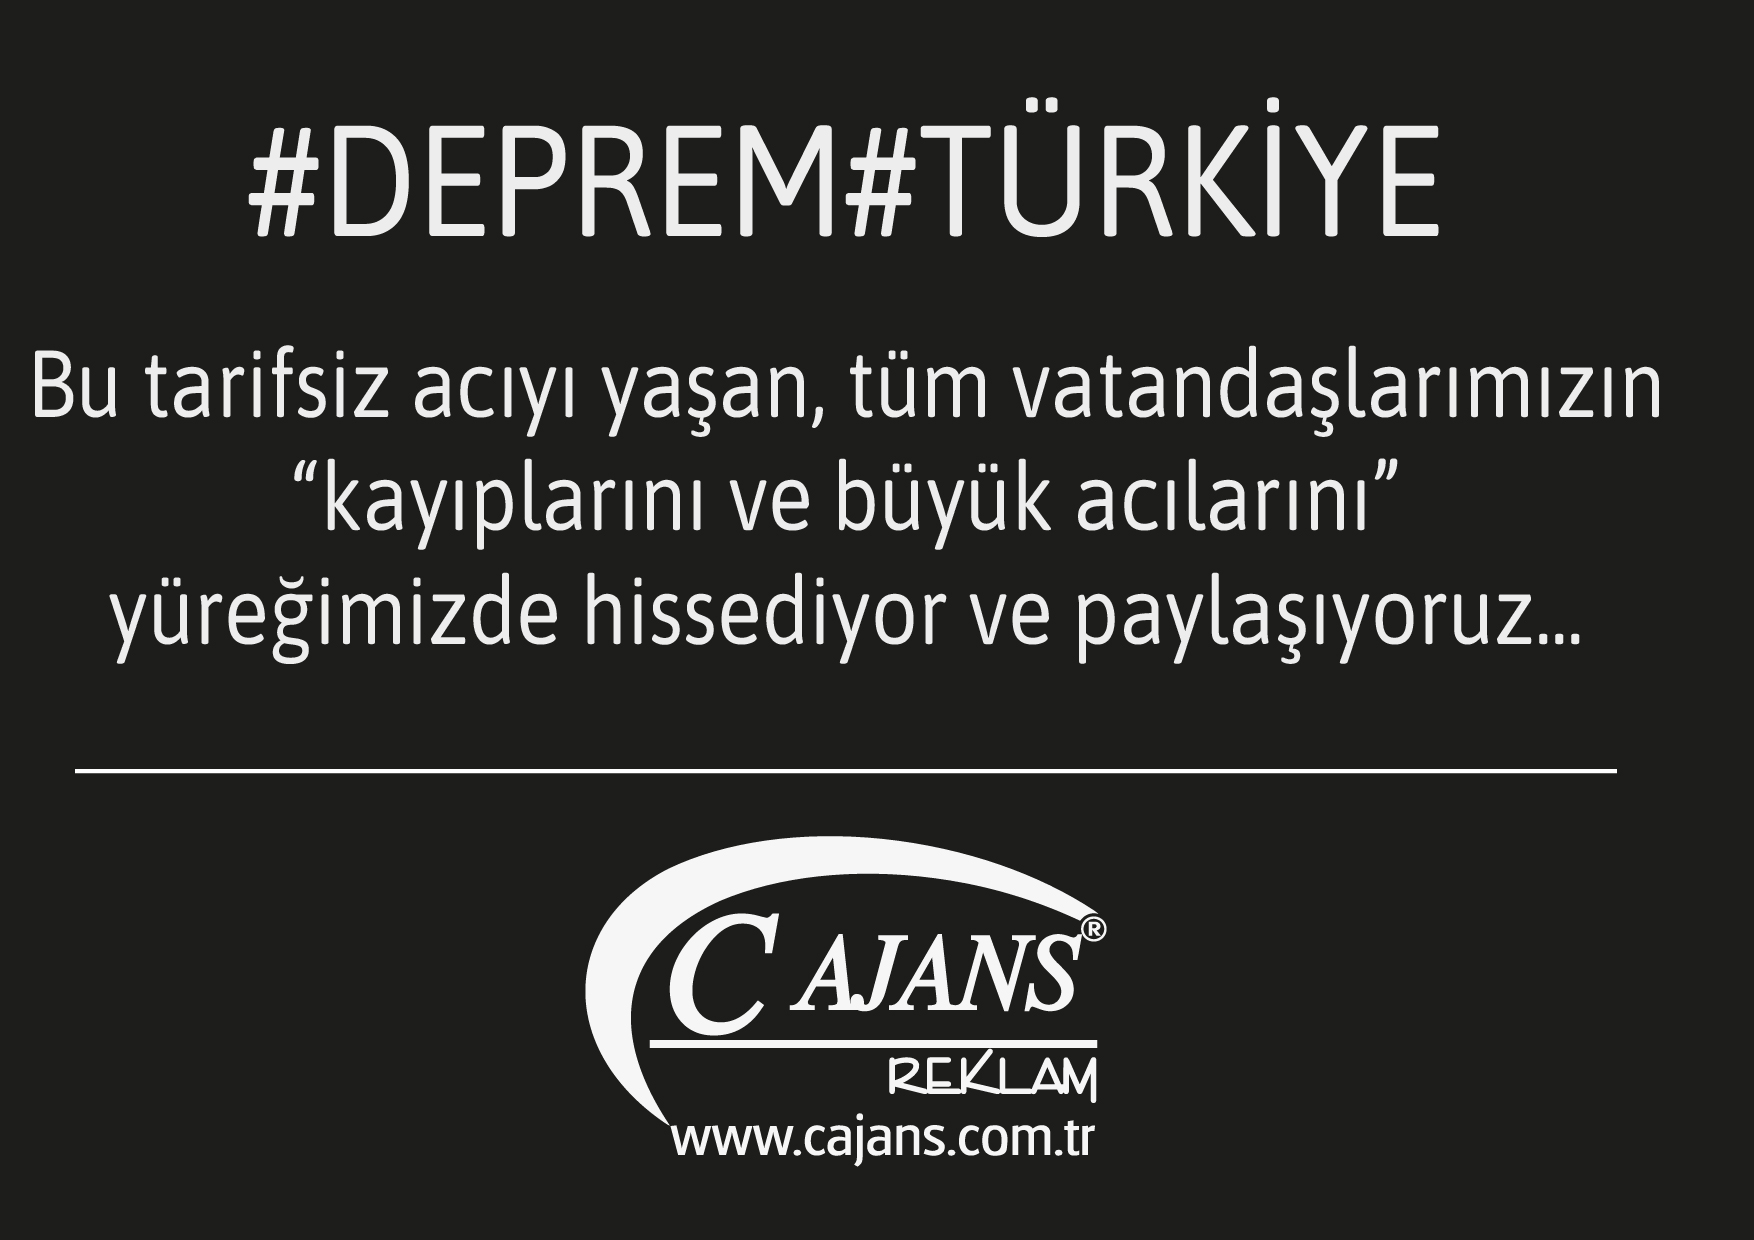 #DEPREM#TURKIYE